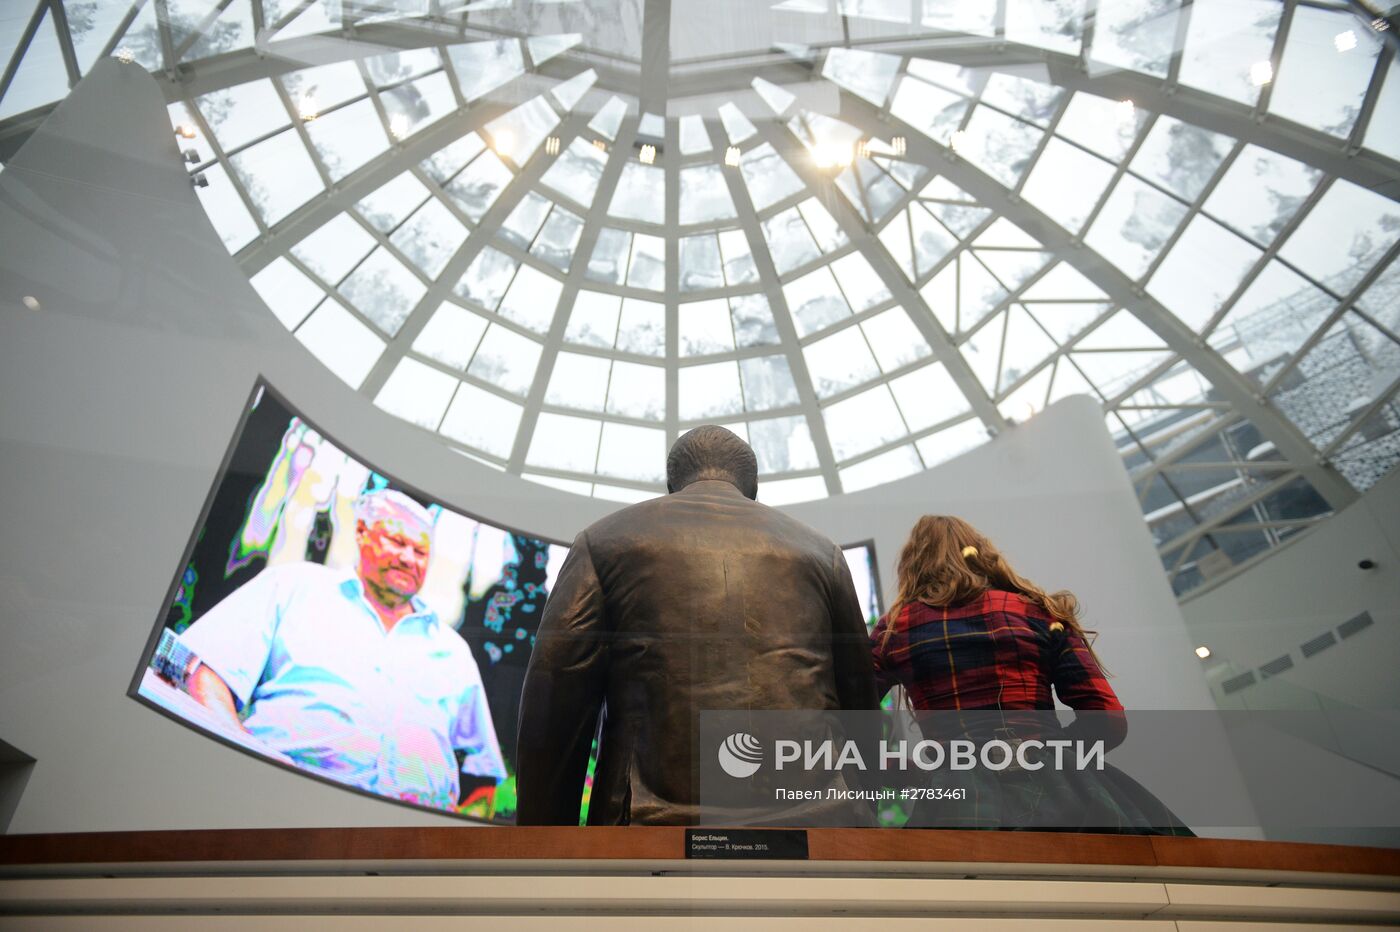 Мероприятия, приуроченные к 85-летию со дня рождения первого российского президента Б. Ельцина